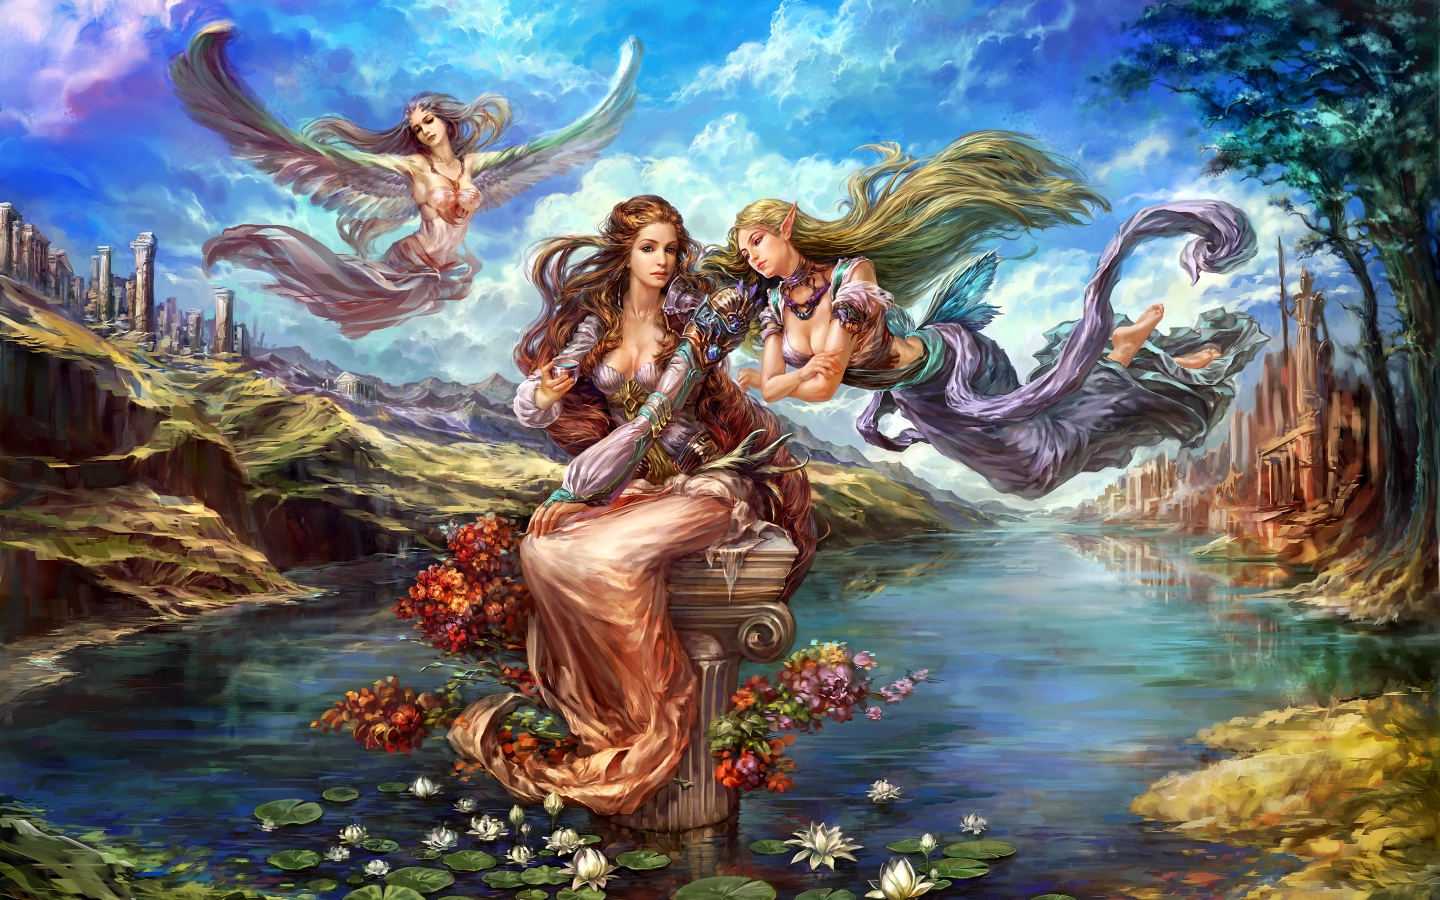 Fantasy Elves from Forsaken World for 1440 x 900 widescreen resolution